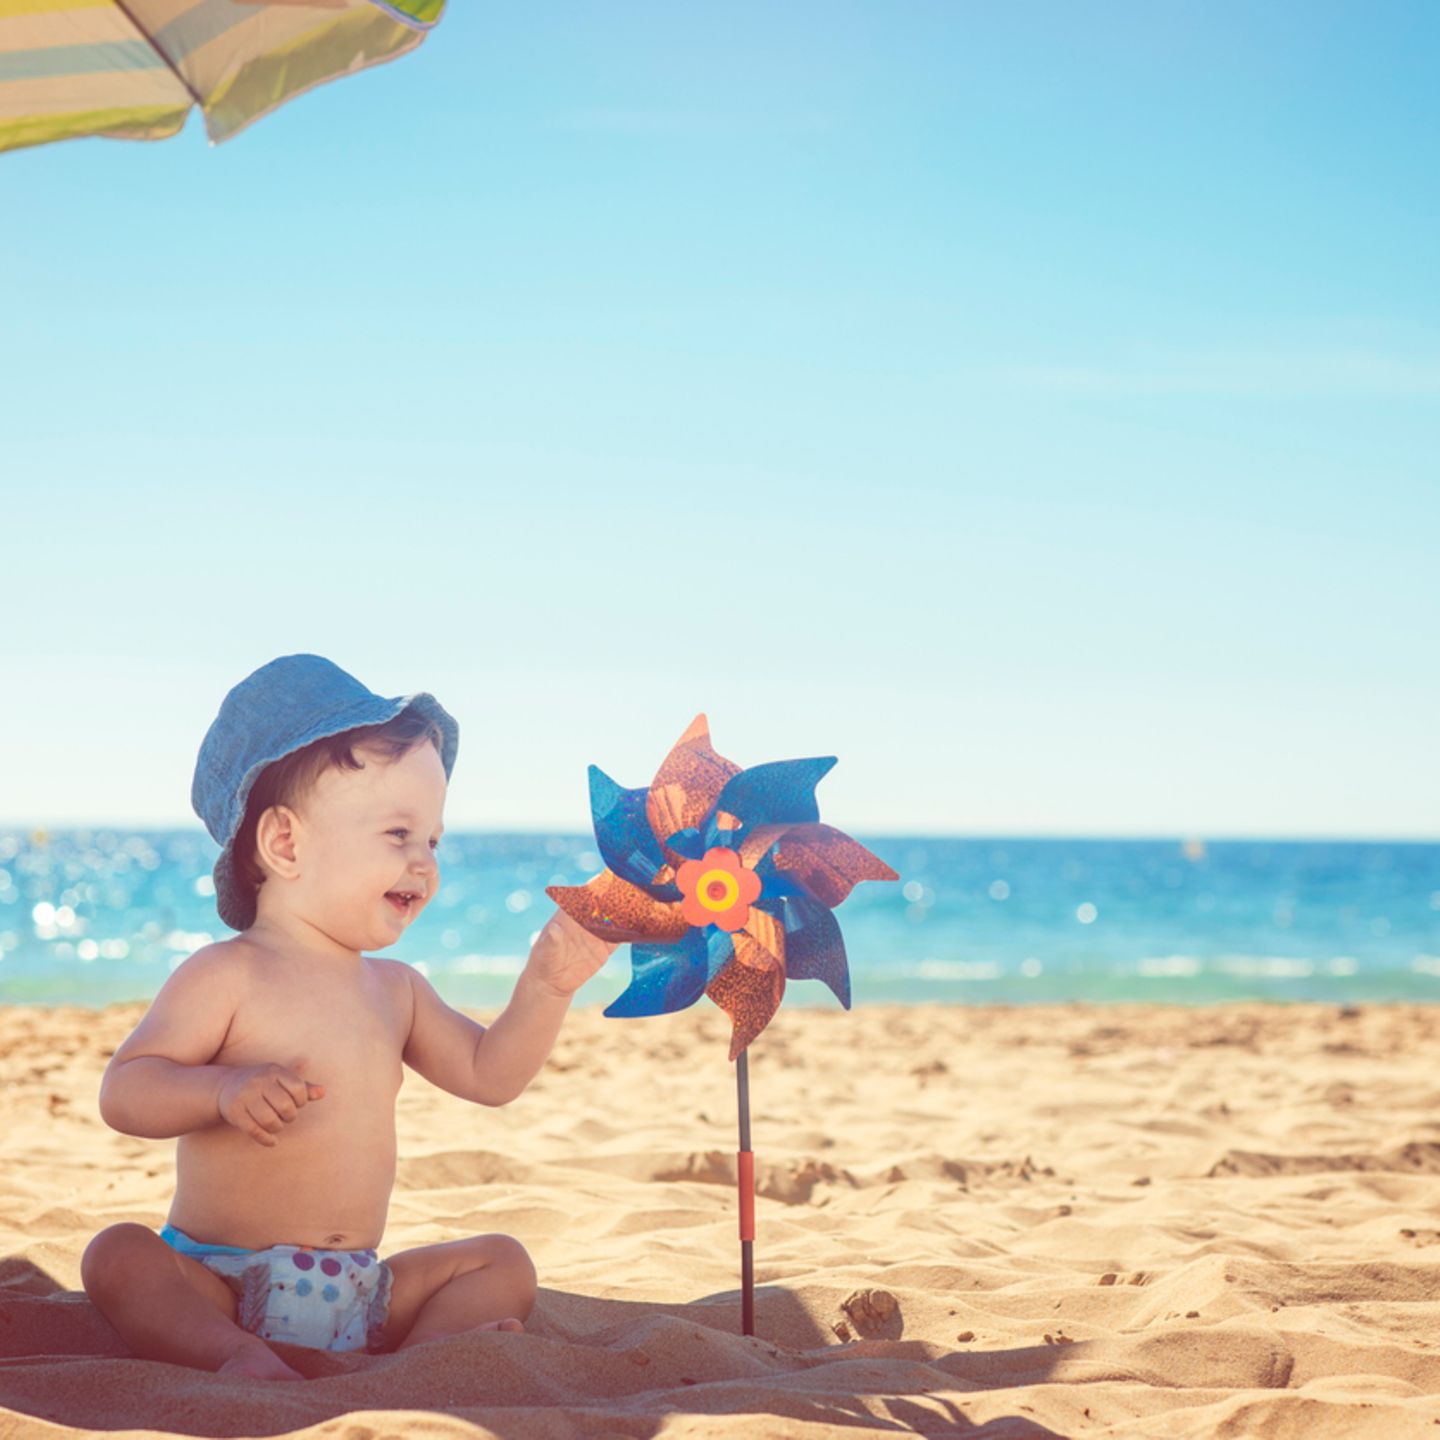 480+ Fotos, Bilder und lizenzfreie Bilder zu Baby Sonnenschutz - iStock